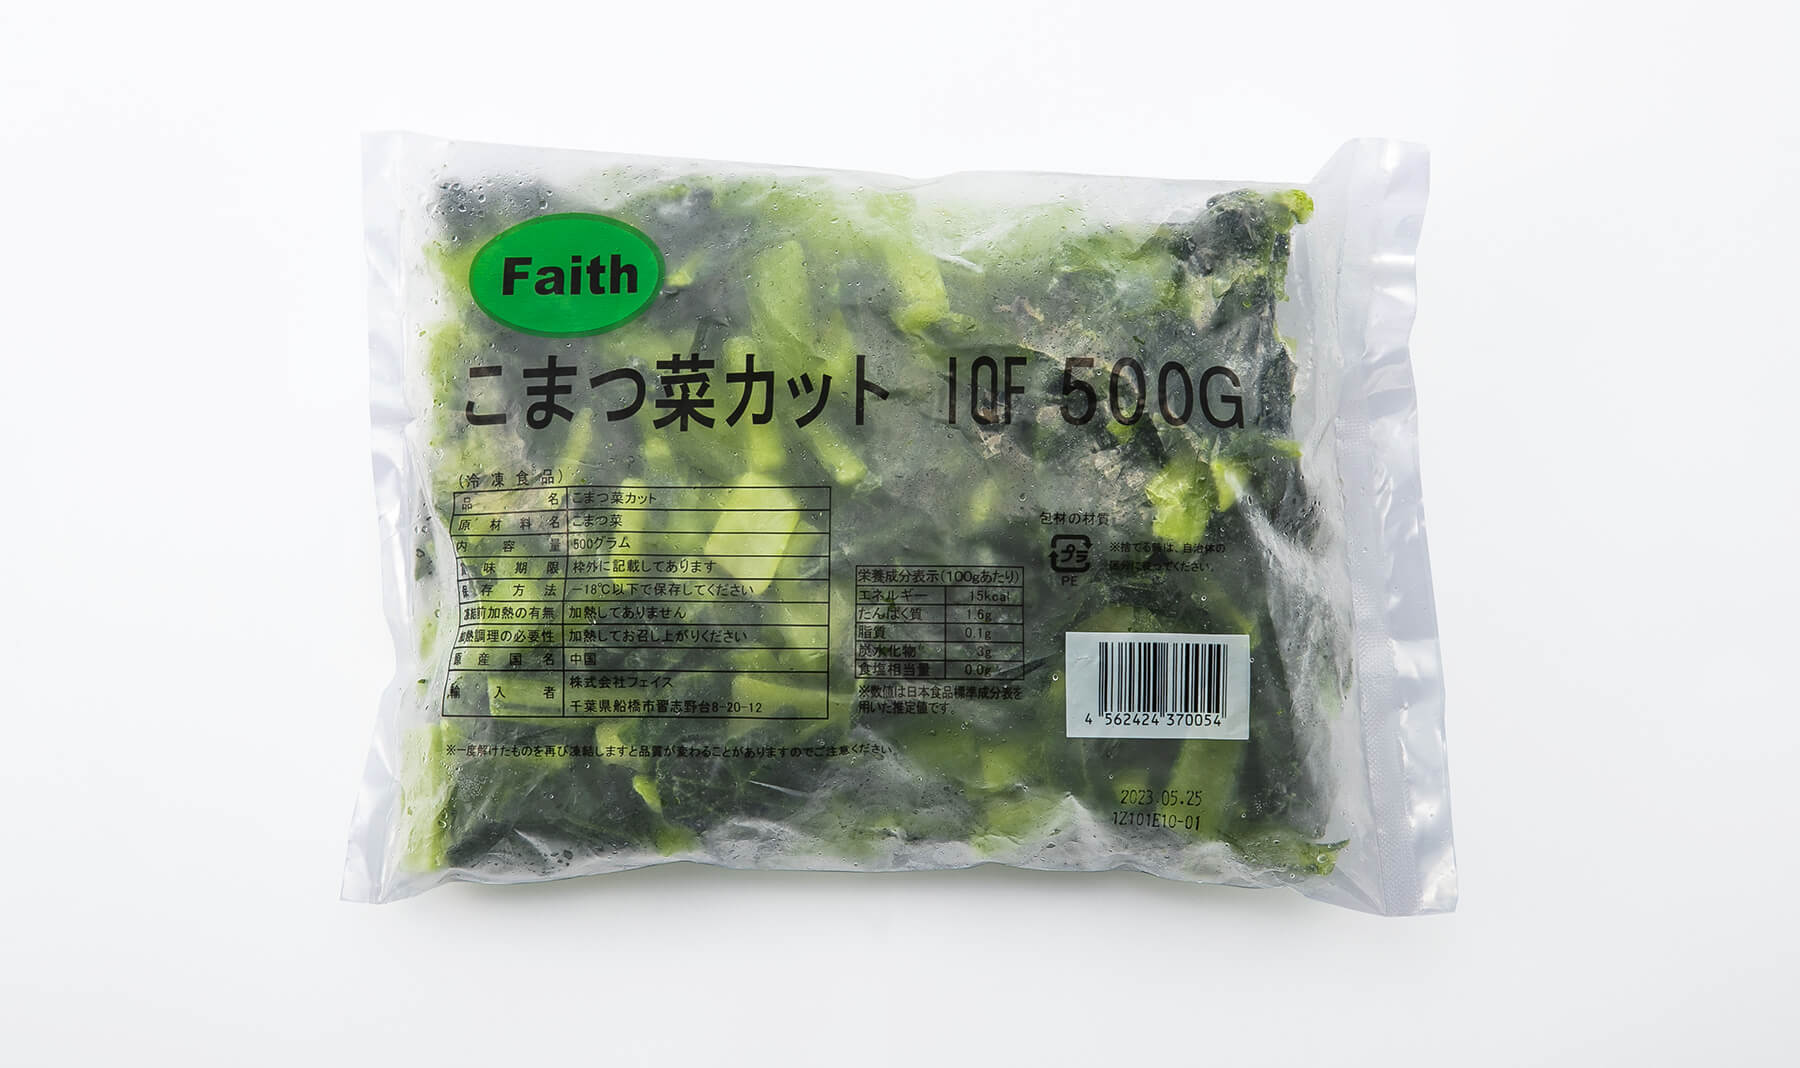 市場 小松菜カットIQF 3826 バラ 500g こまつな お弁当 冷凍食品 凍結冷凍野菜 おかず 業務用